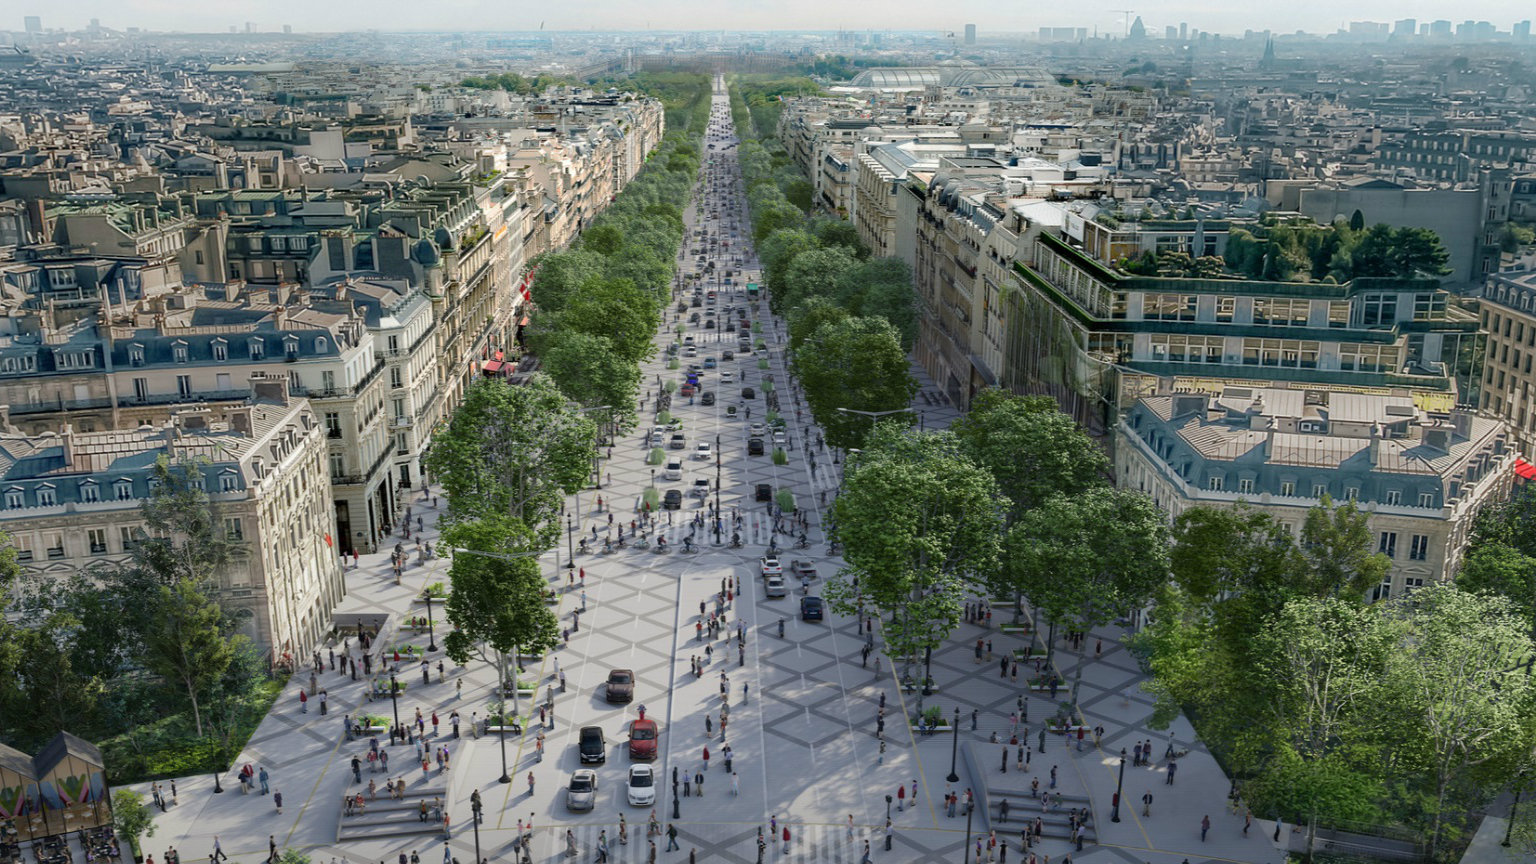 Єлисейські поля в Парижі планують перетворити на сад до 2030 року